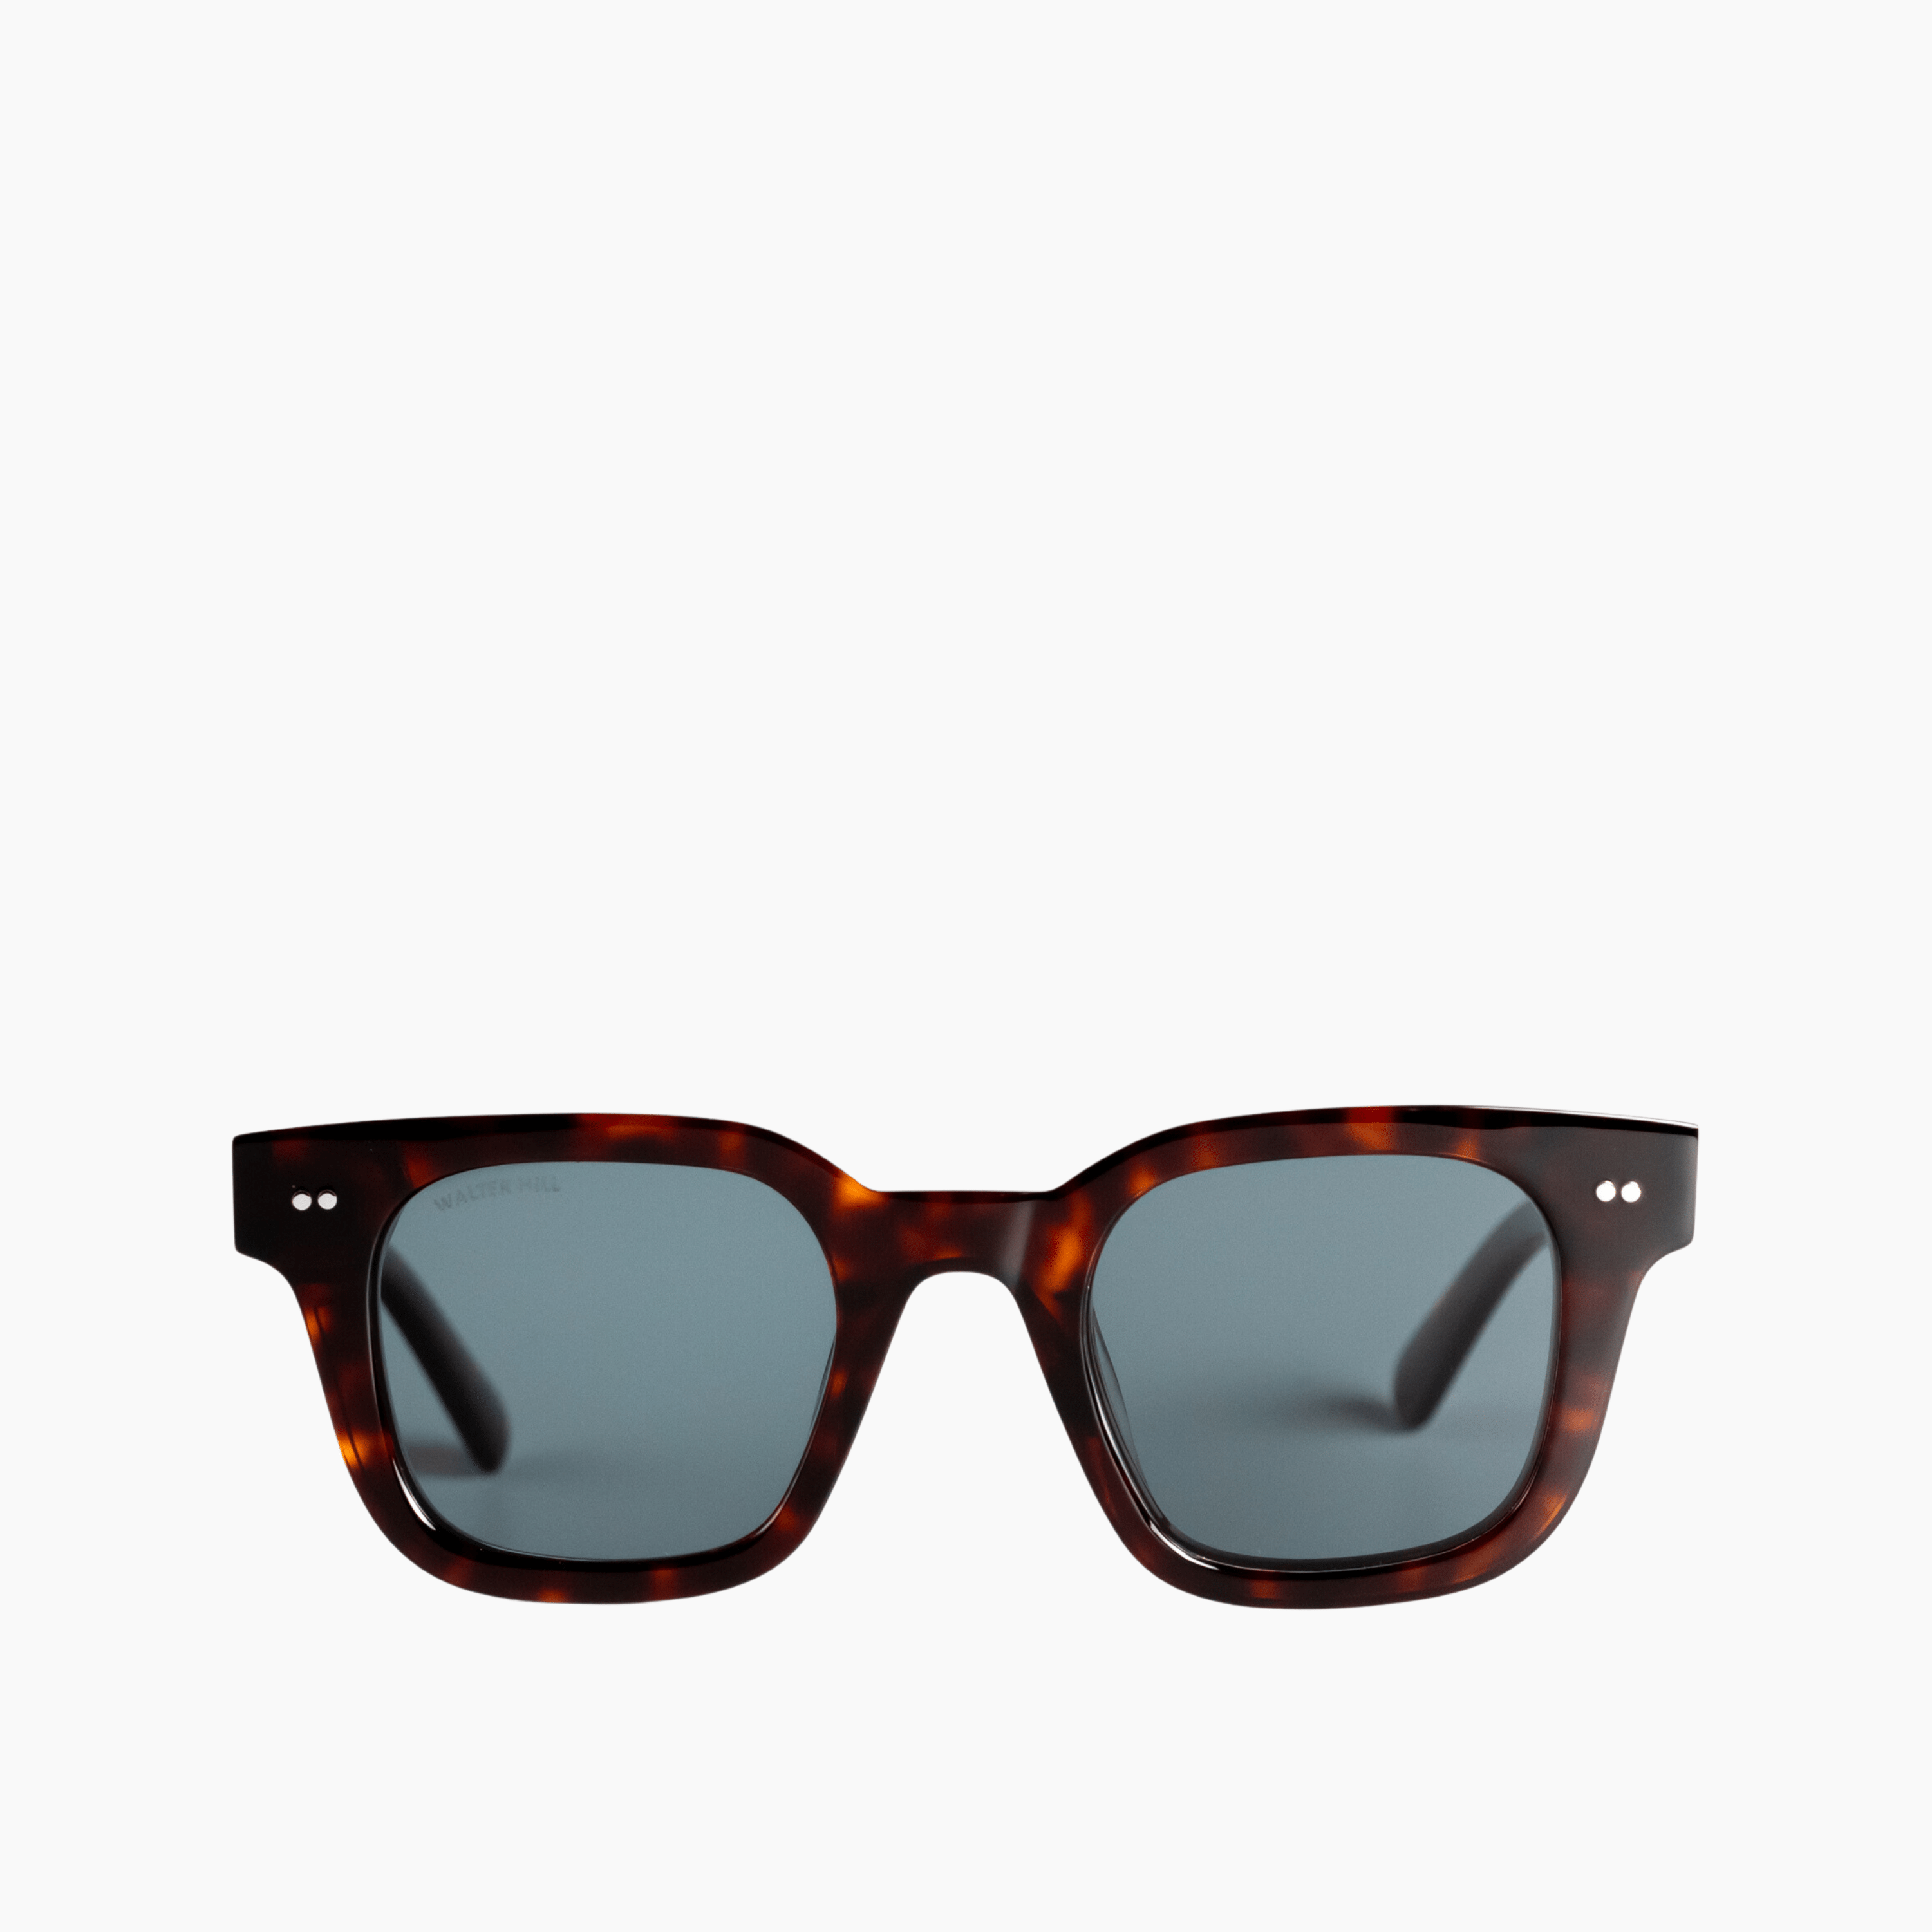 Walter Hill Sunglasses Tortoise / Standard / Polarized Cat.3 XAVIER - Tortoise